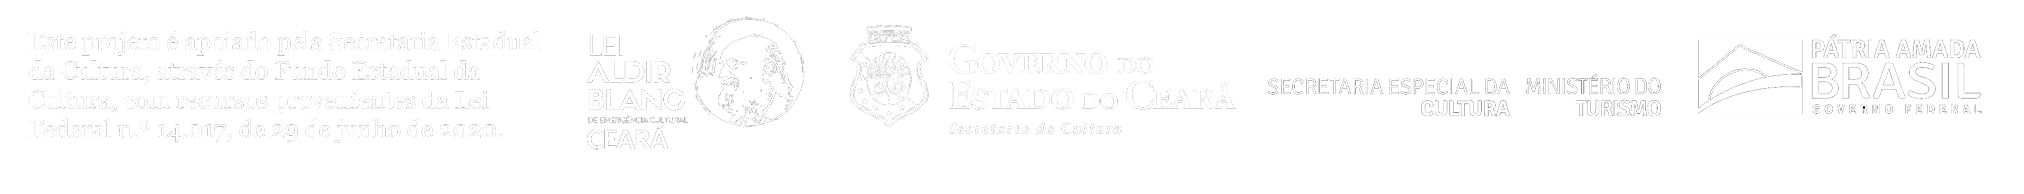 Logos Lei Aldir Blanc, Secretaria da Cultura Estado do Ceará, Ministério do Turismo, Governo Federal